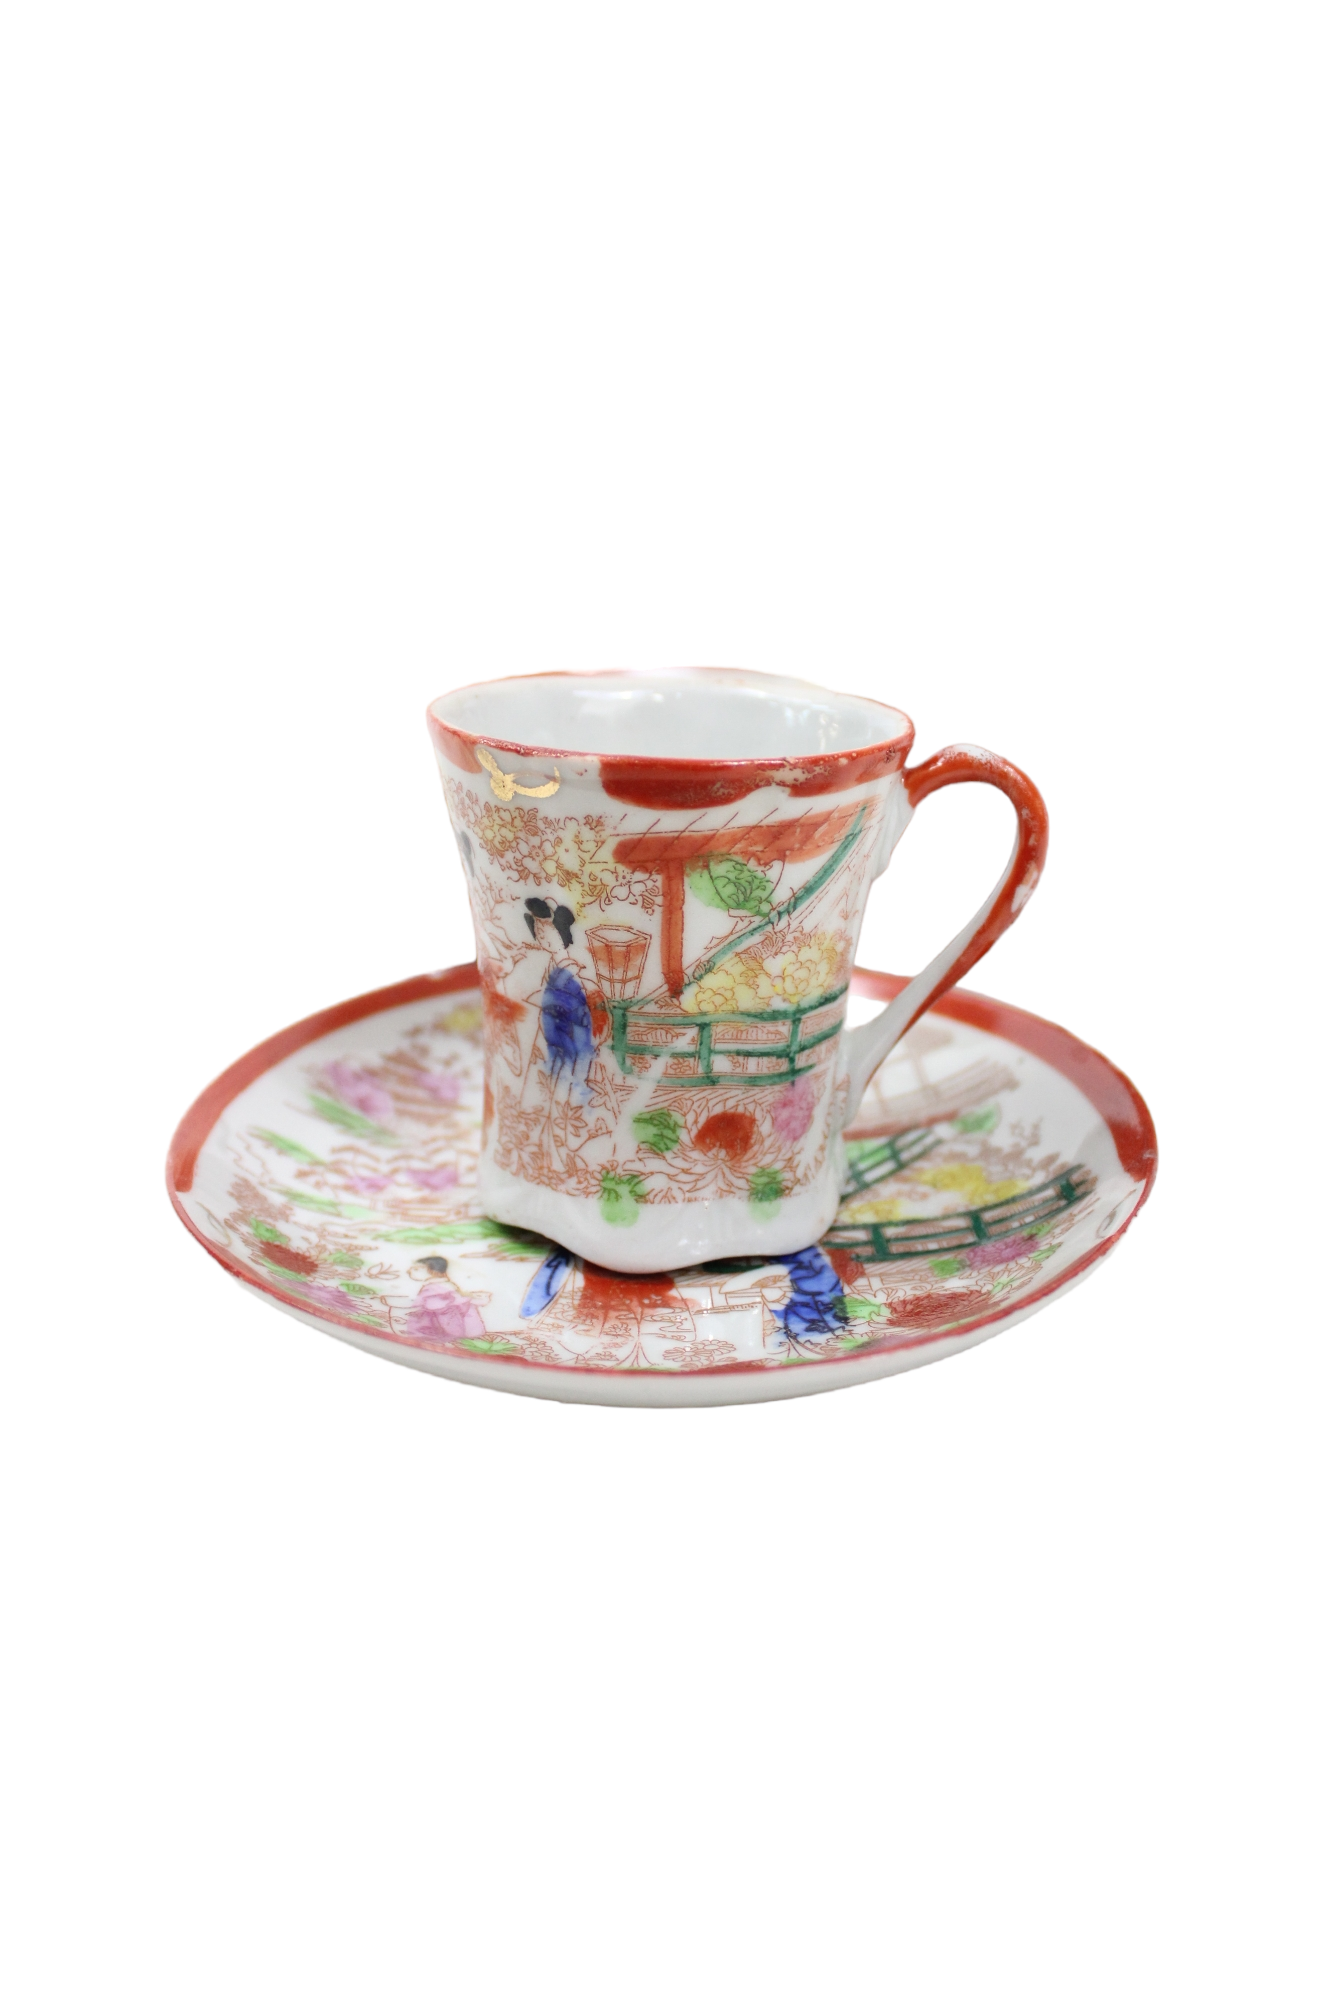 Vintage Japanese Orange Painted Teacups & Saucers | Set Of 6